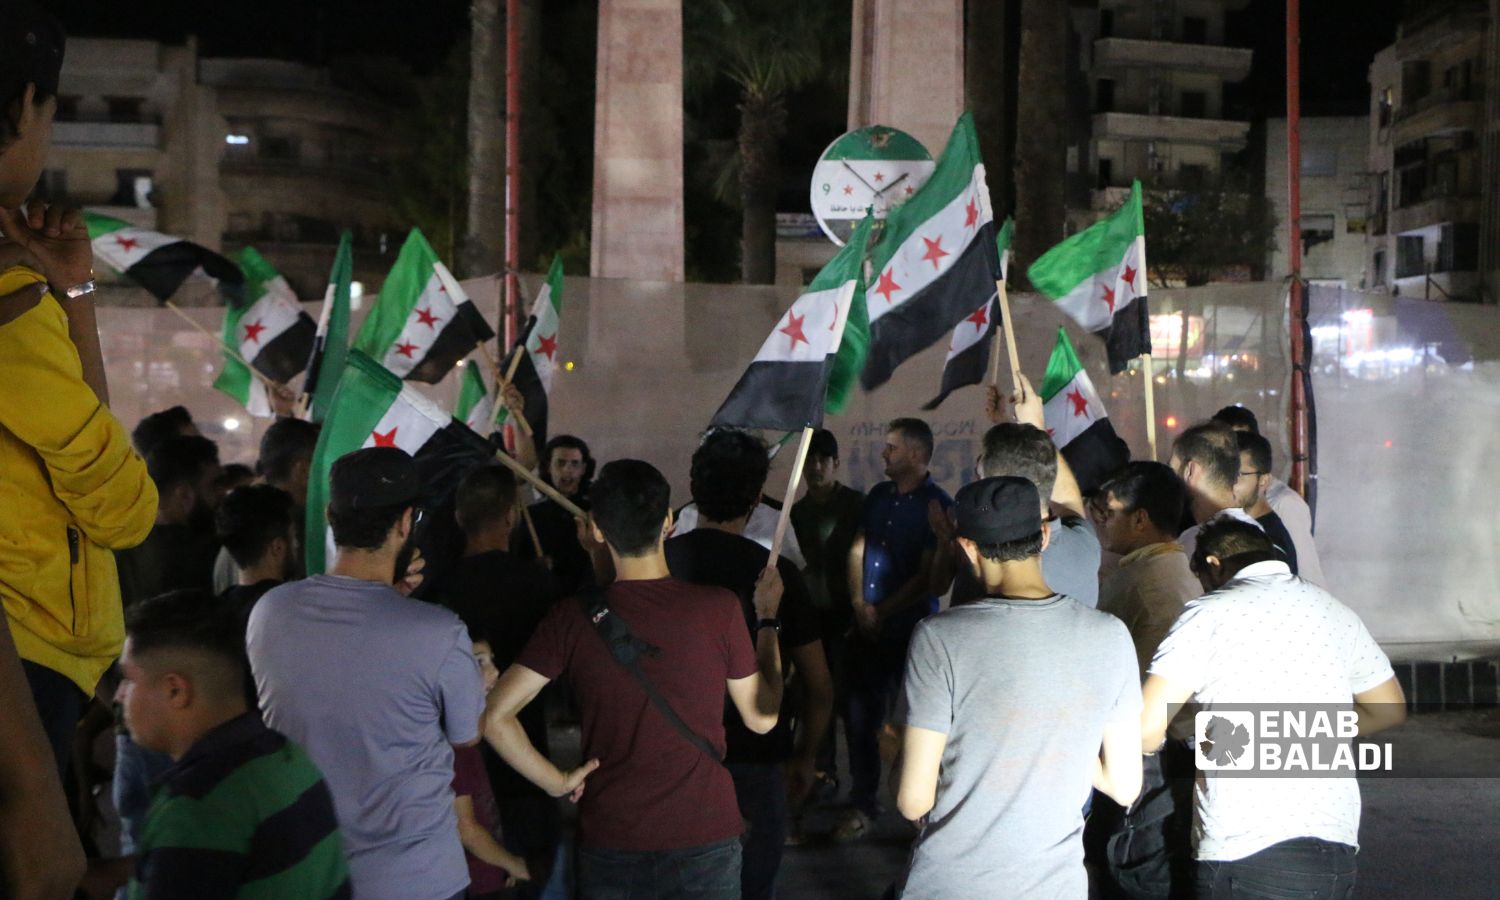 متظاهرون وسط مدينة إدلب احتجاجًا على شتم الثورة السورية والاعتداء على إعلاميين قرب معبر "باب الهوى" من قبل عناصر في "هيئة تحرير الشام"- 12 من أيلول 2022 (عنب بلدي)